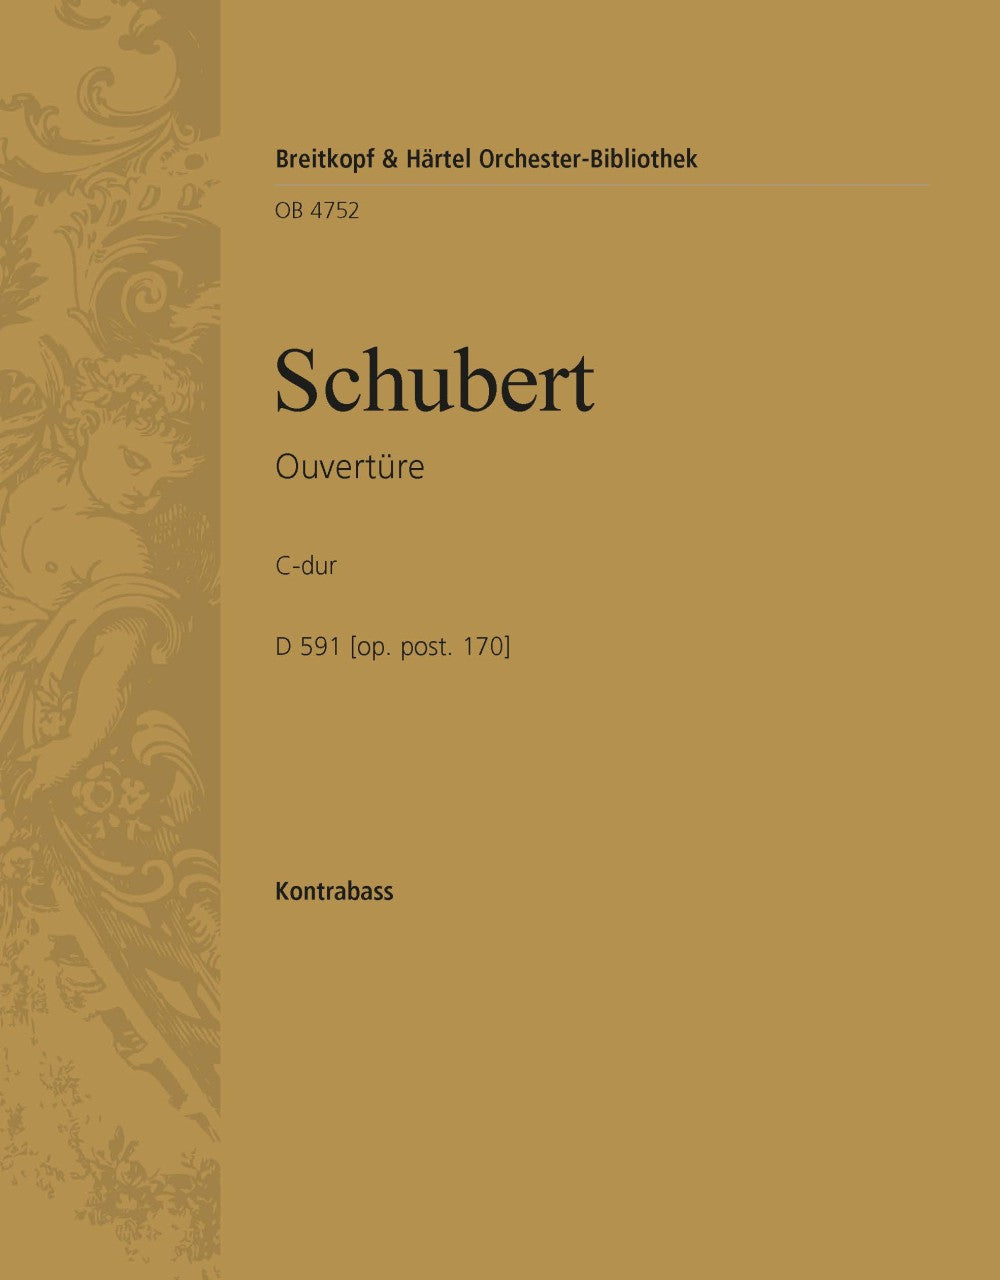 Schubert: Overture in C Major, D 591